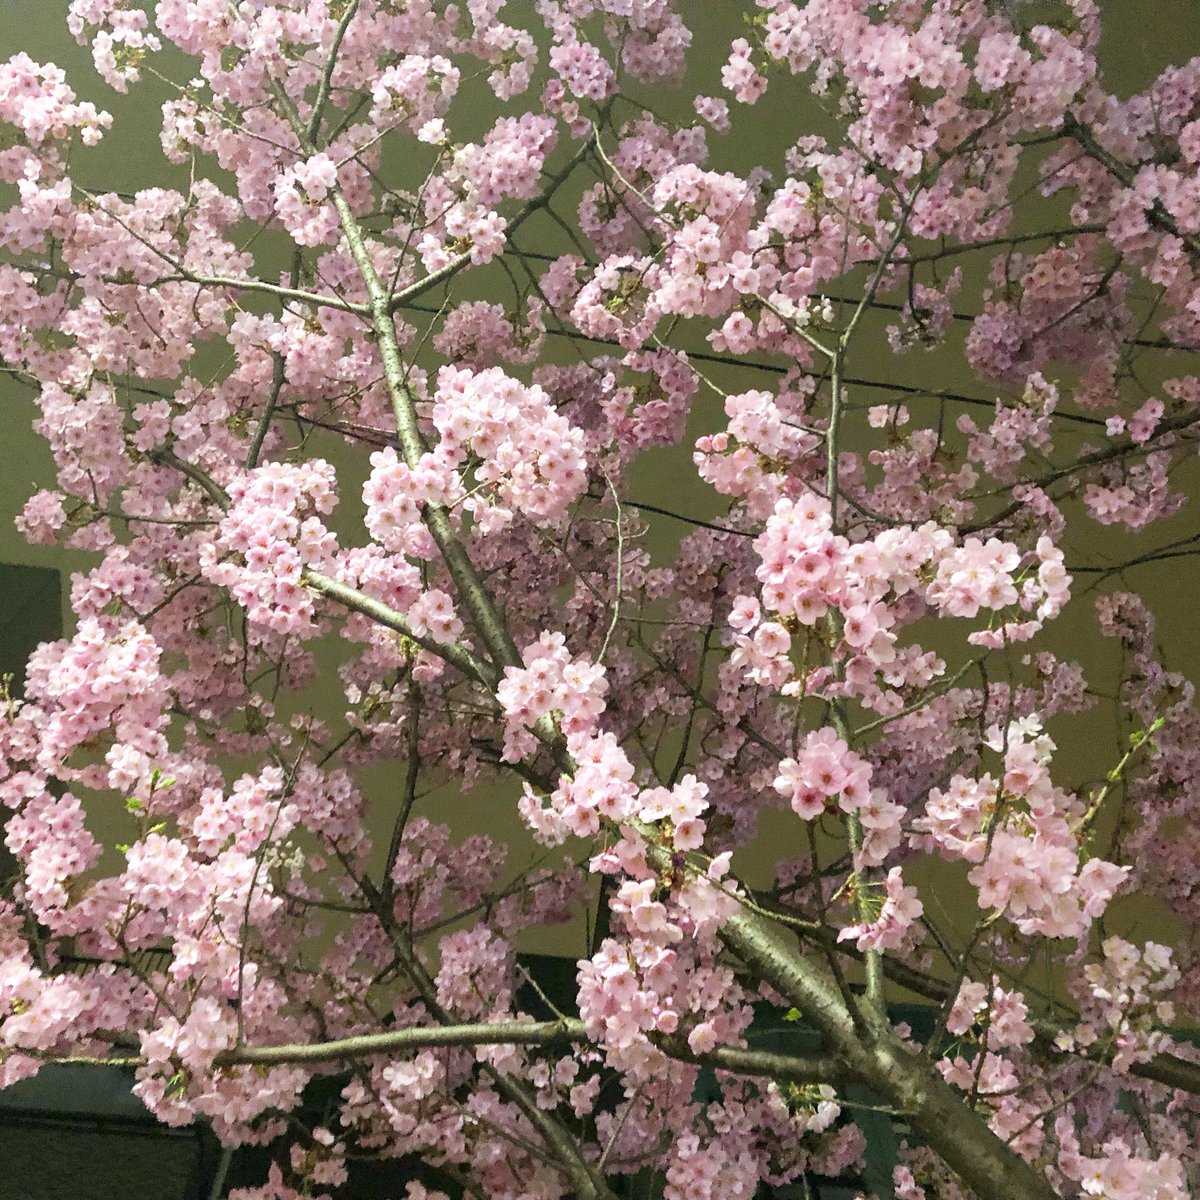 儚く、でも鮮やかに
春はもうすぐ

#桜 #cherryblossom 
#大寒桜 #たぶんね 
#springiscomingsoon 
#春はもうすぐだね #そだねー